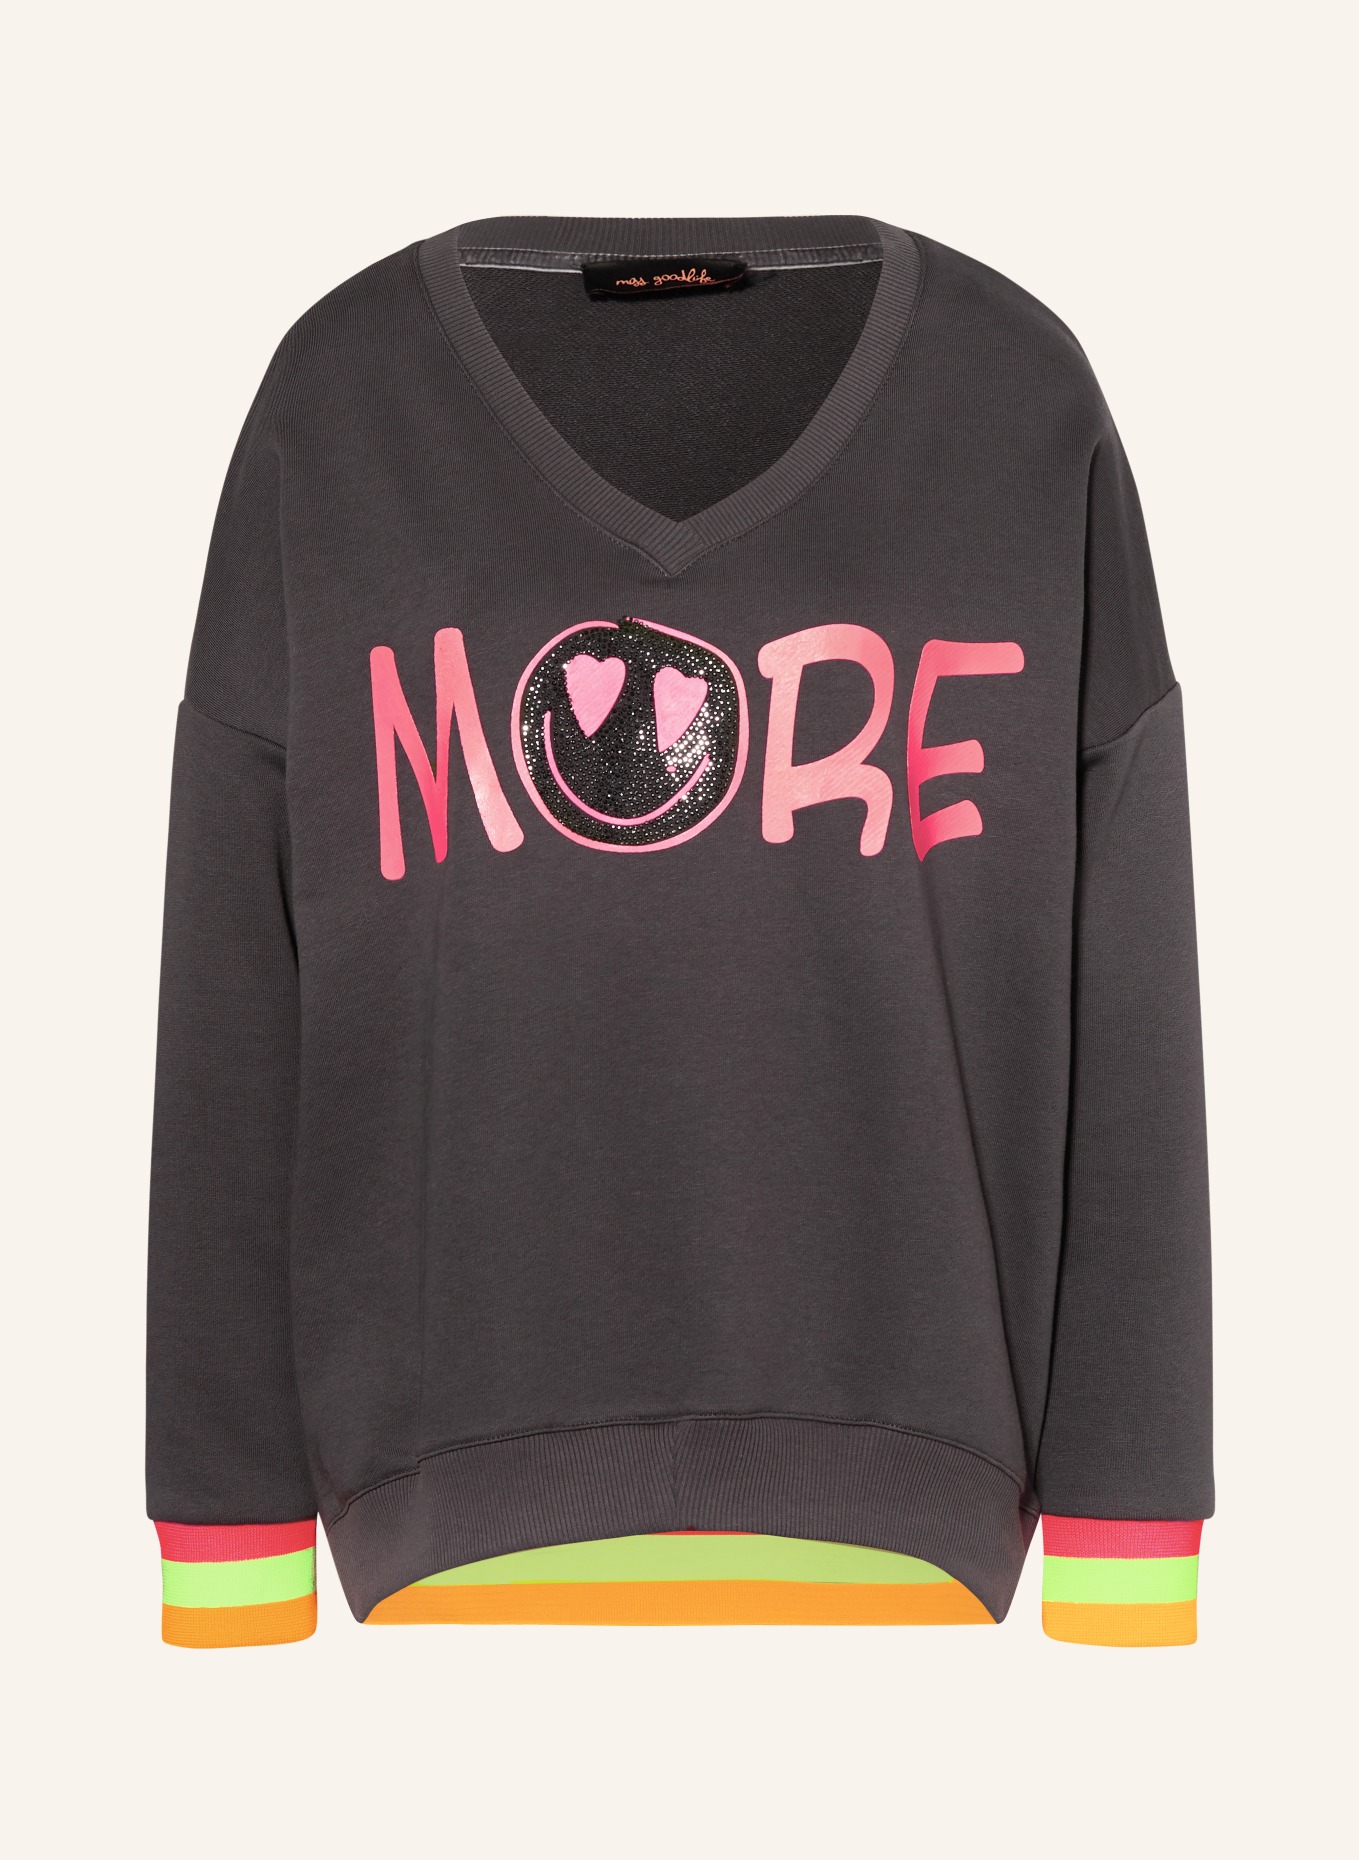 miss goodlife Sweatshirt MORE mit Schmucksteinen, Farbe: DUNKELGRAU/ NEONPINK (Bild 1)